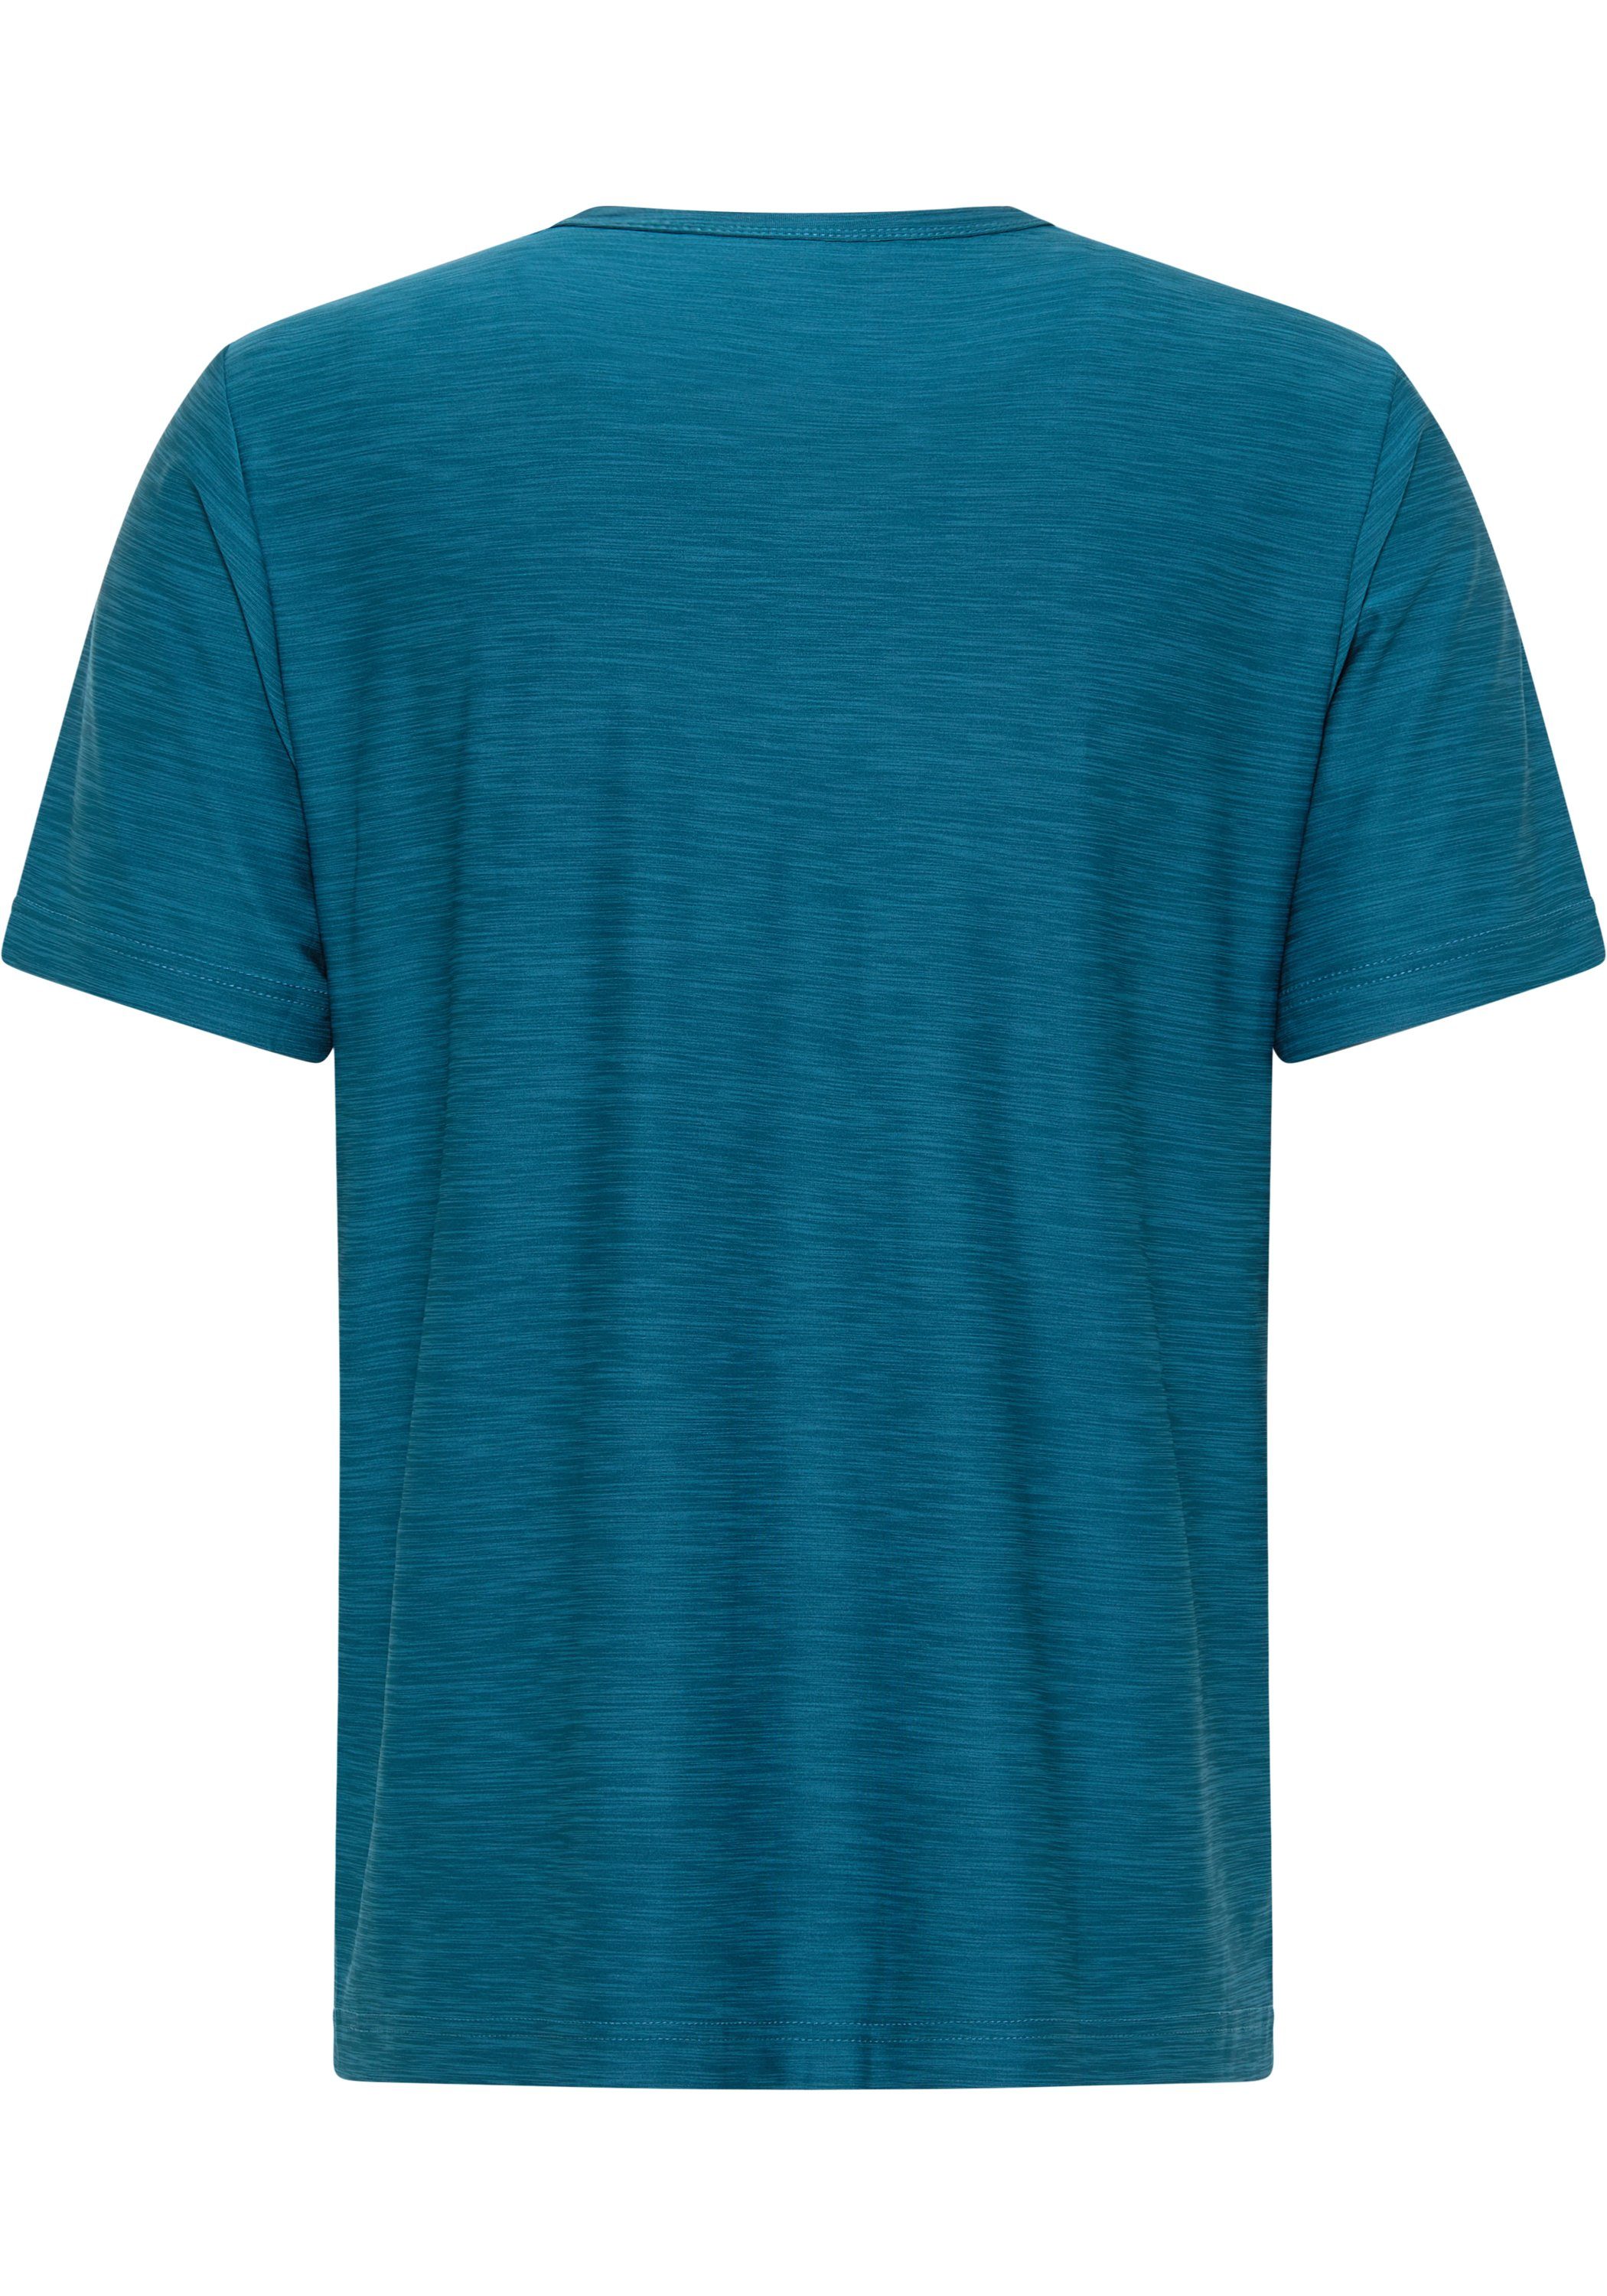 JOY & FUN deep melange T-Shirt Joy Sportswear VITUS turquoise T-Shirt